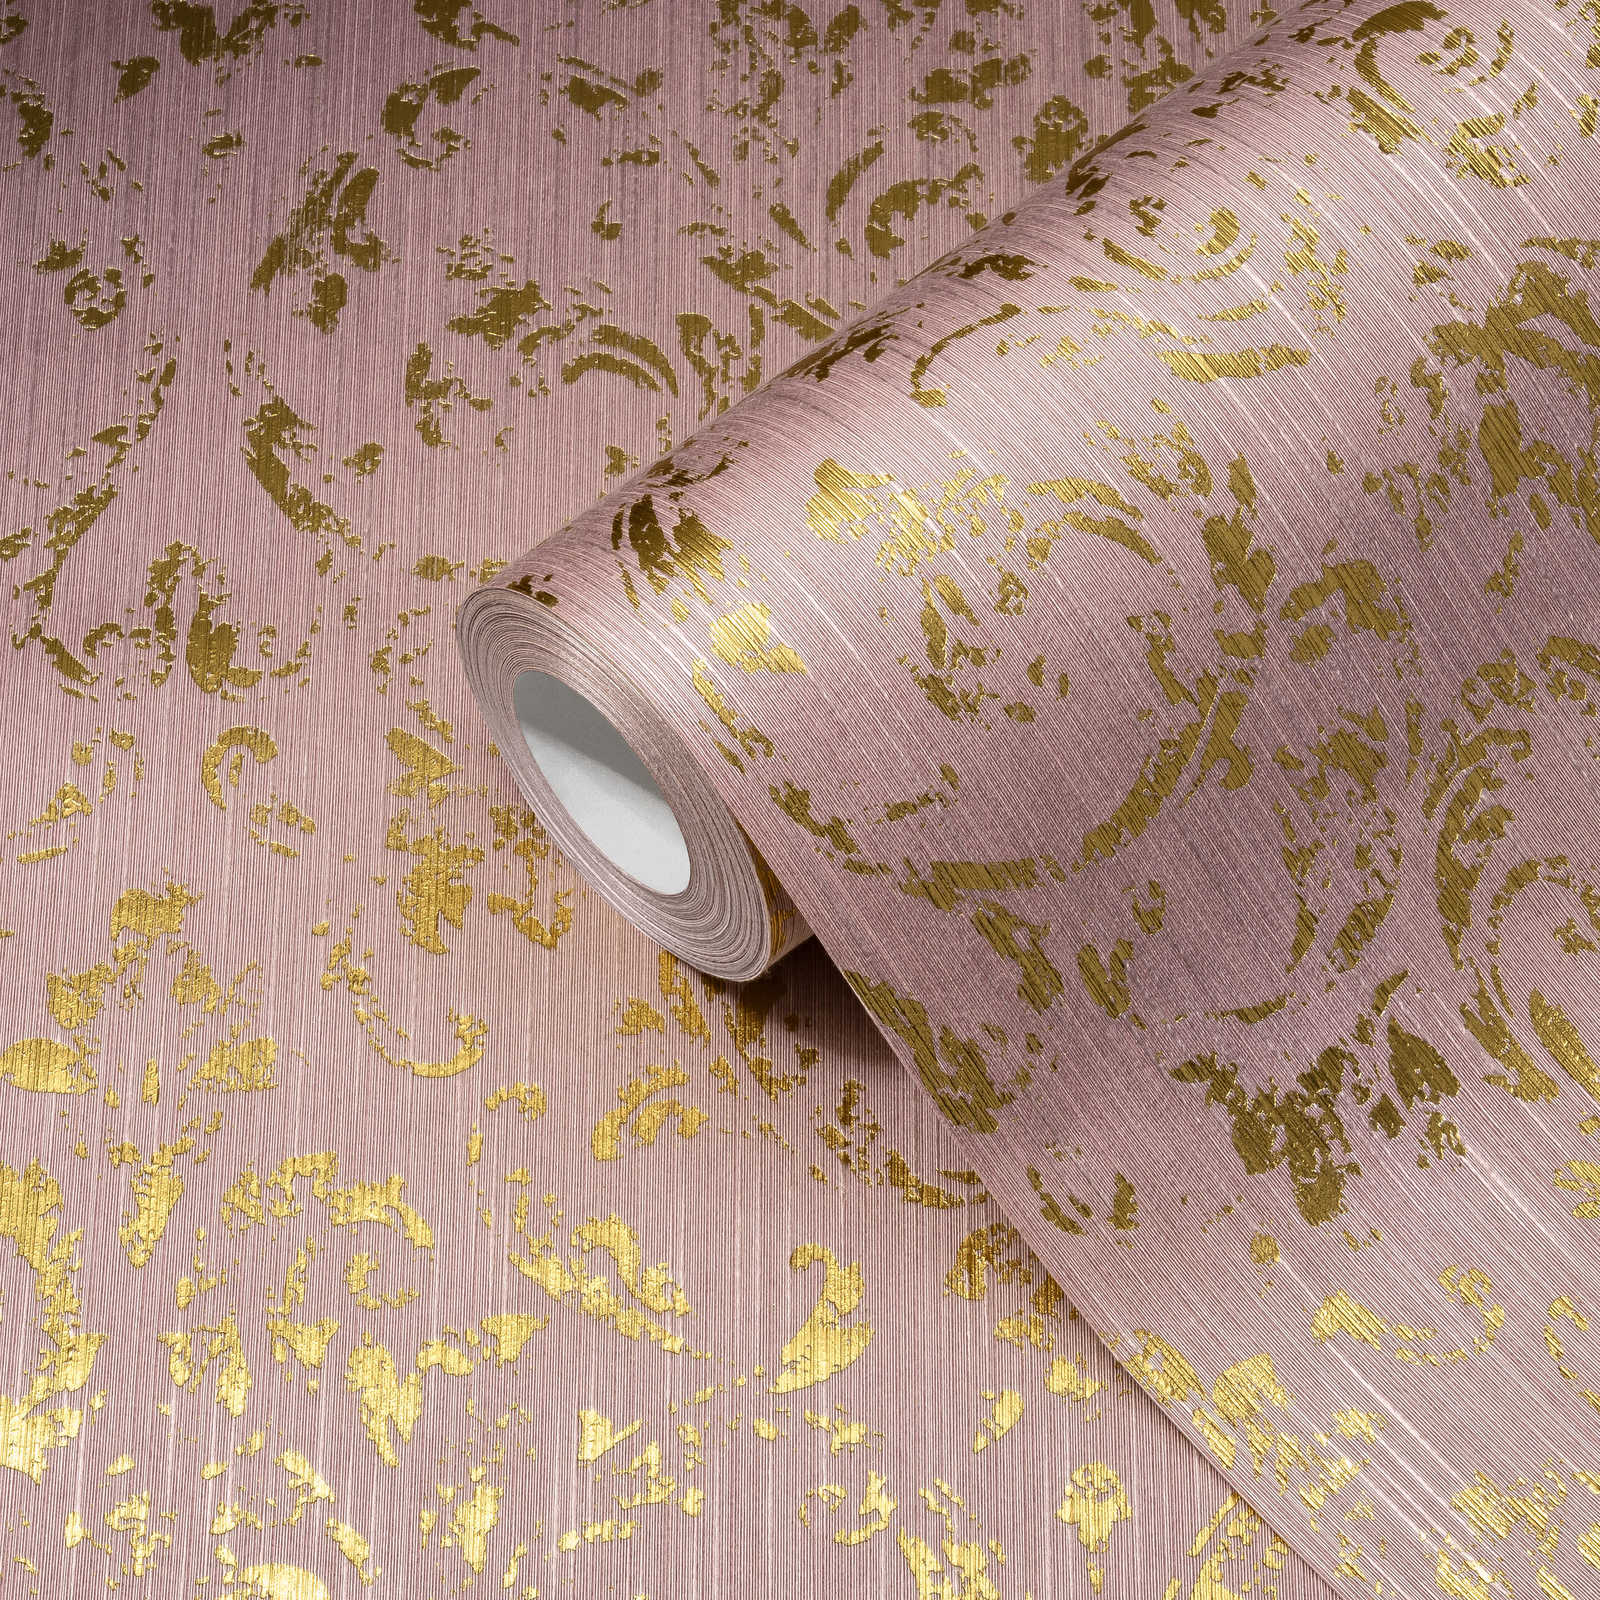             Behang met gouden ornamenten in used look - Roze, Goud
        